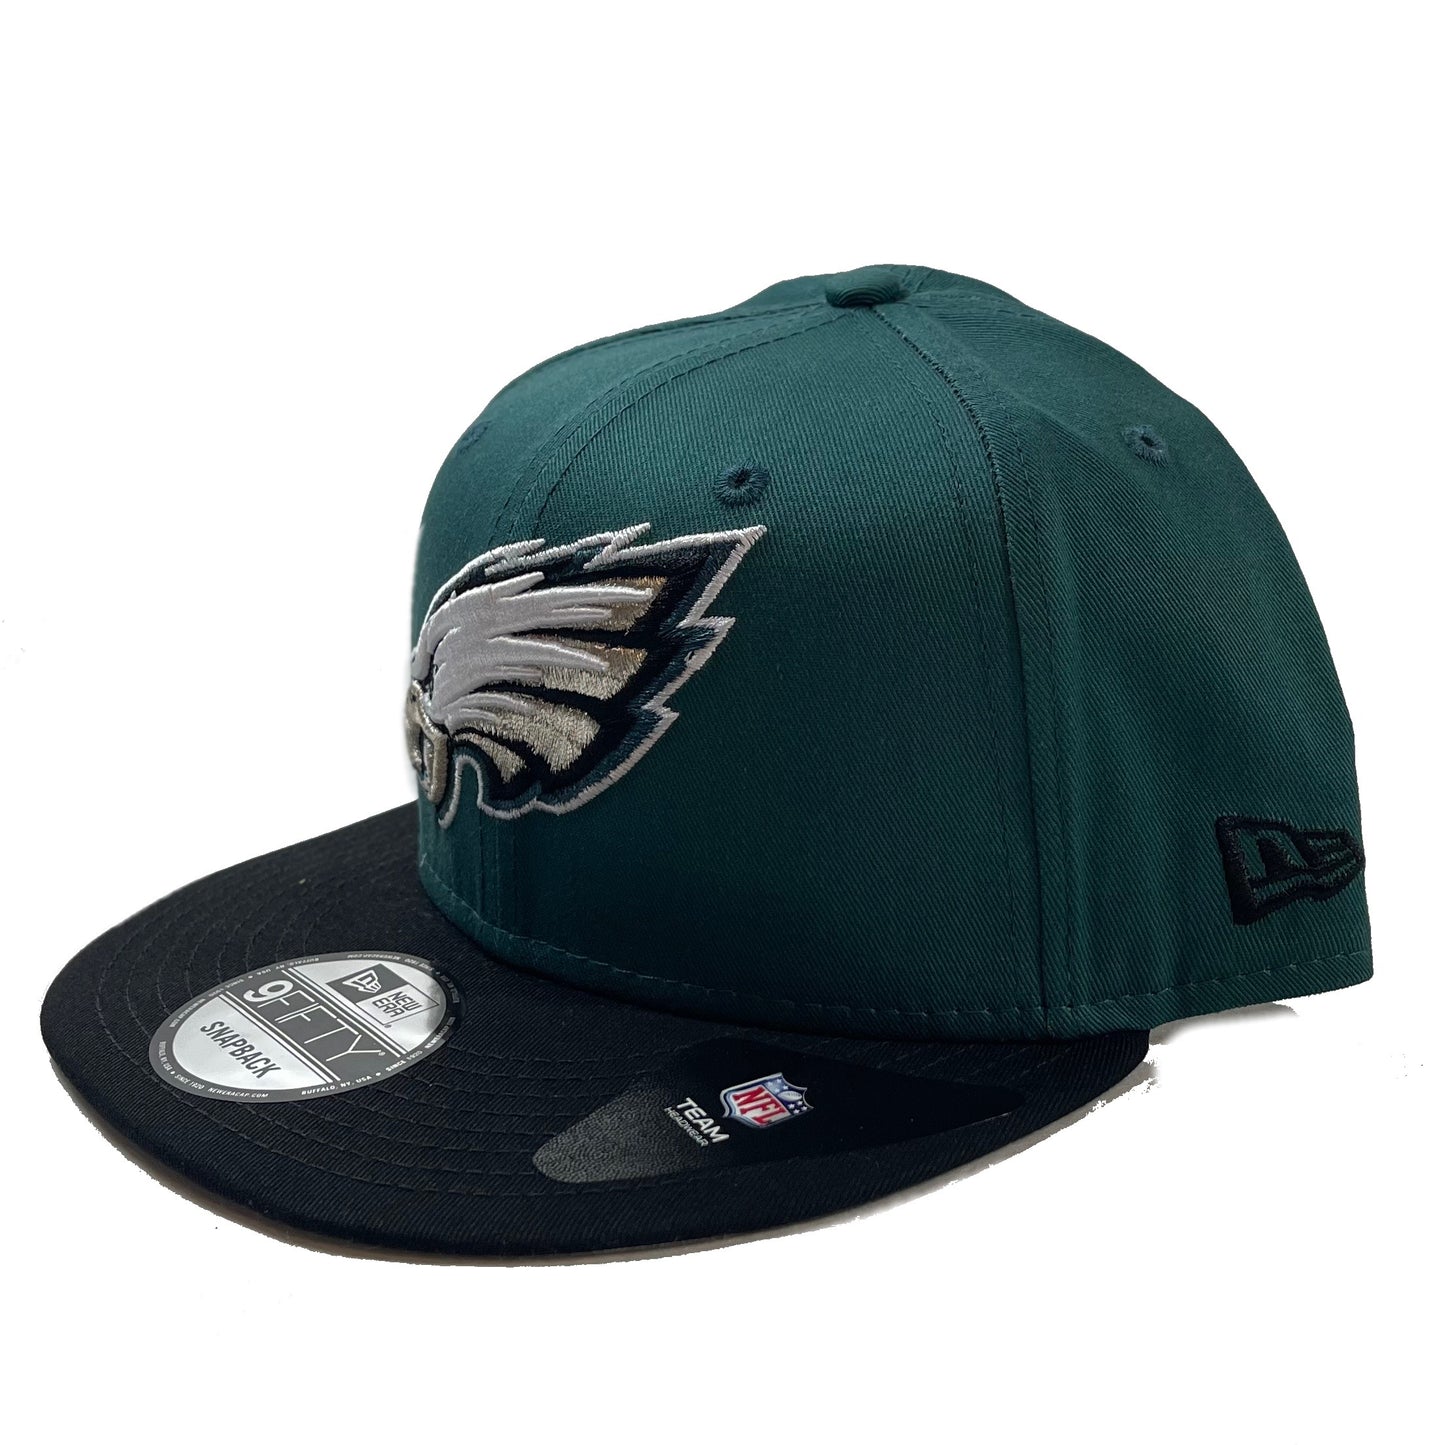 Philadelphia Eagles (Green/Black) Fitted